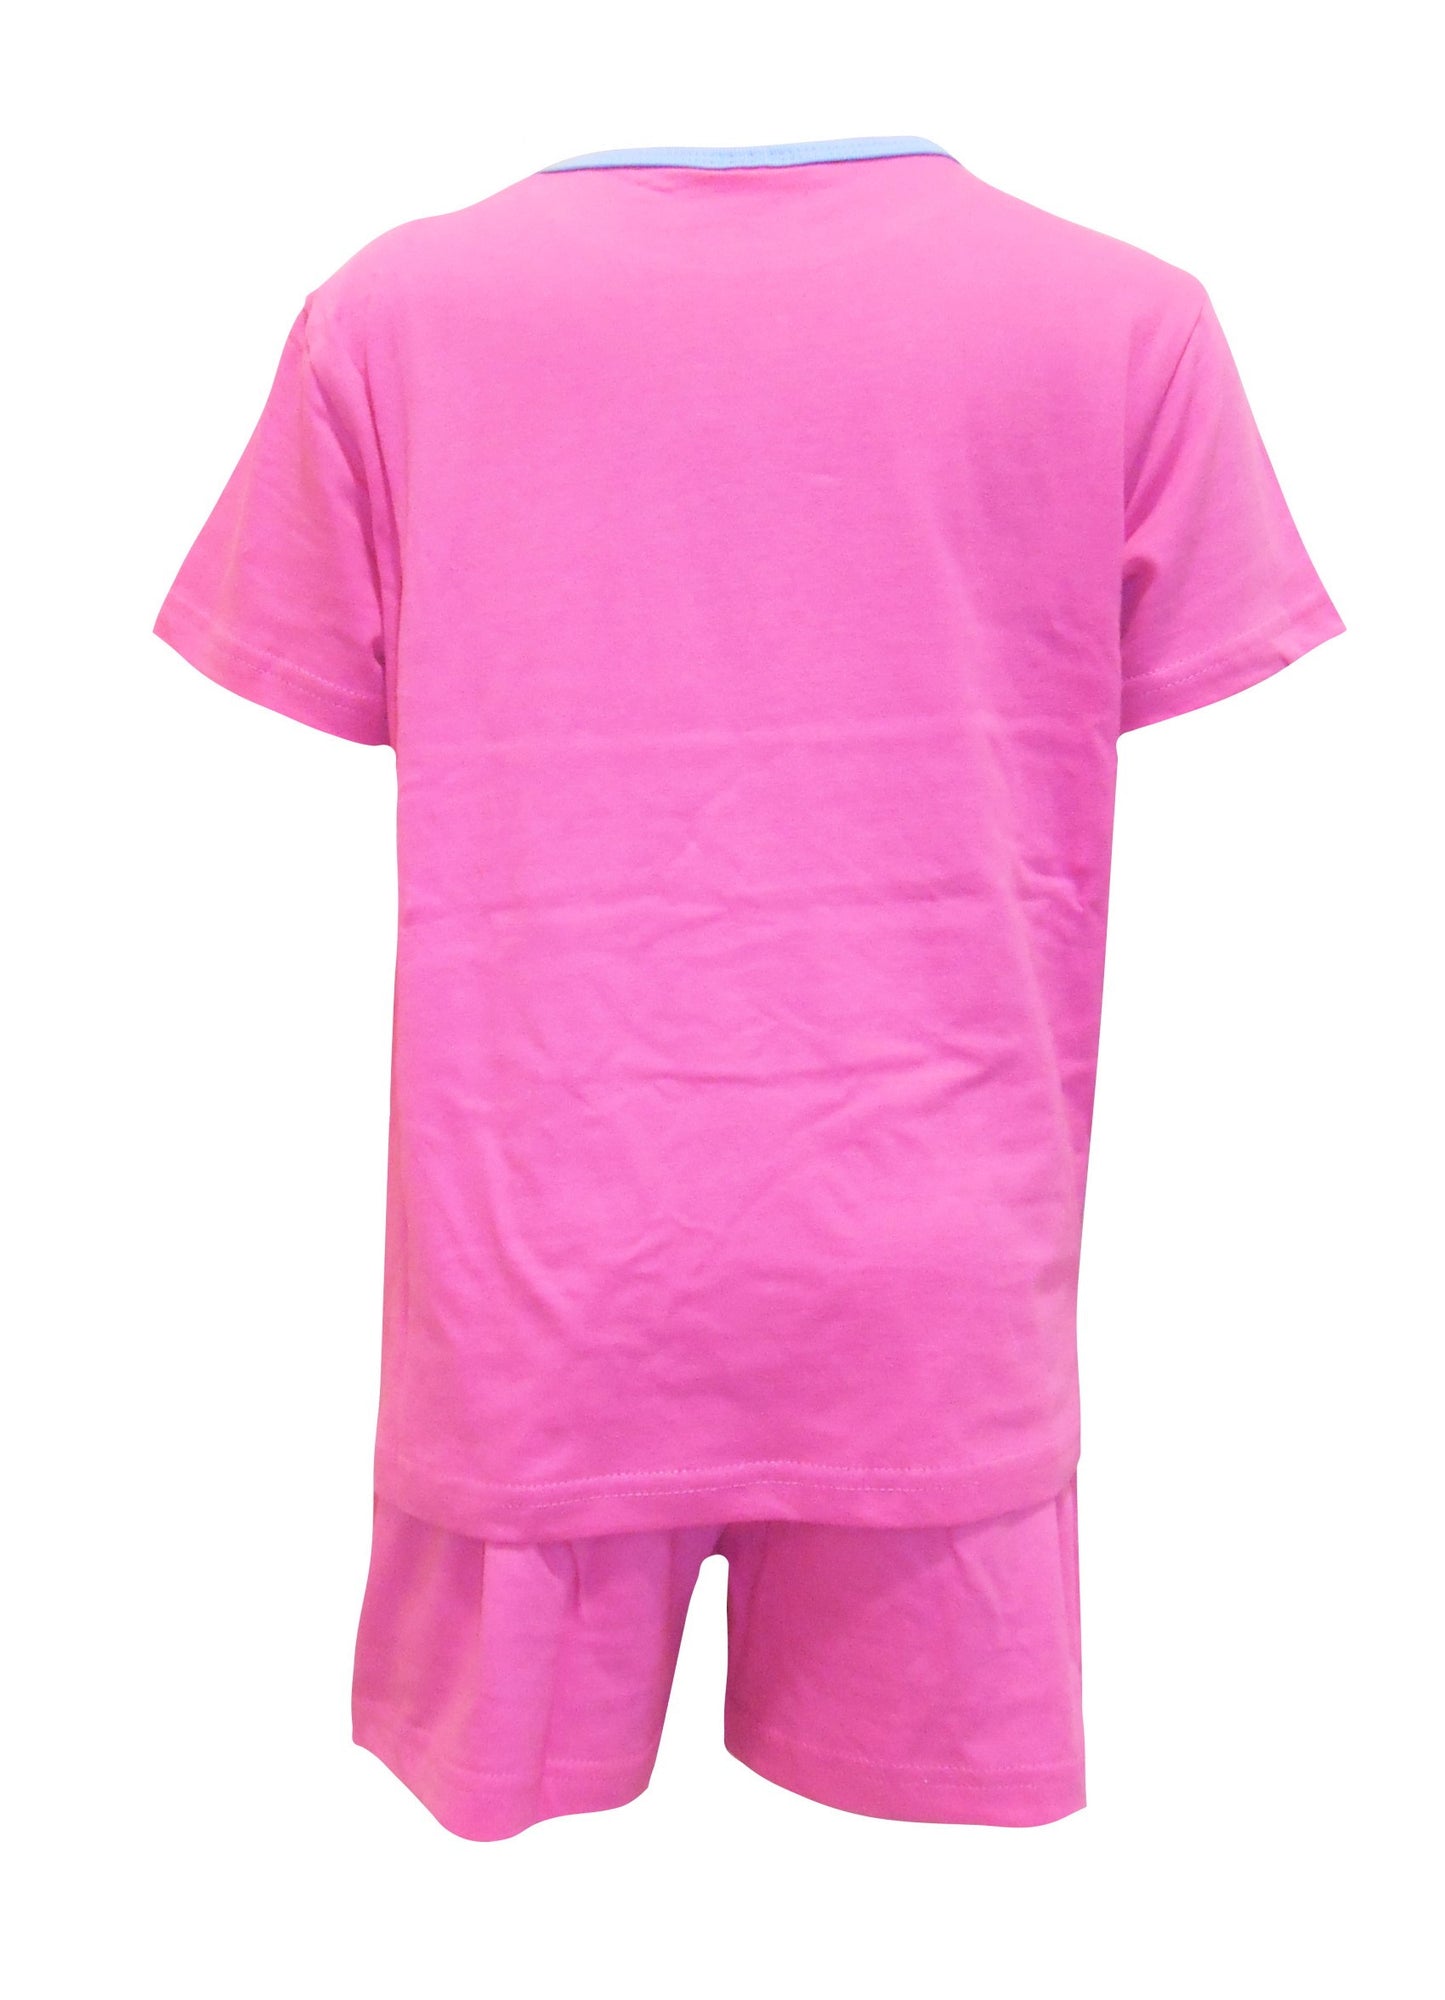 Trolls Poppy "Free to Sparkle" Girls Pink Shortie Pyjamas 5-6 Years.